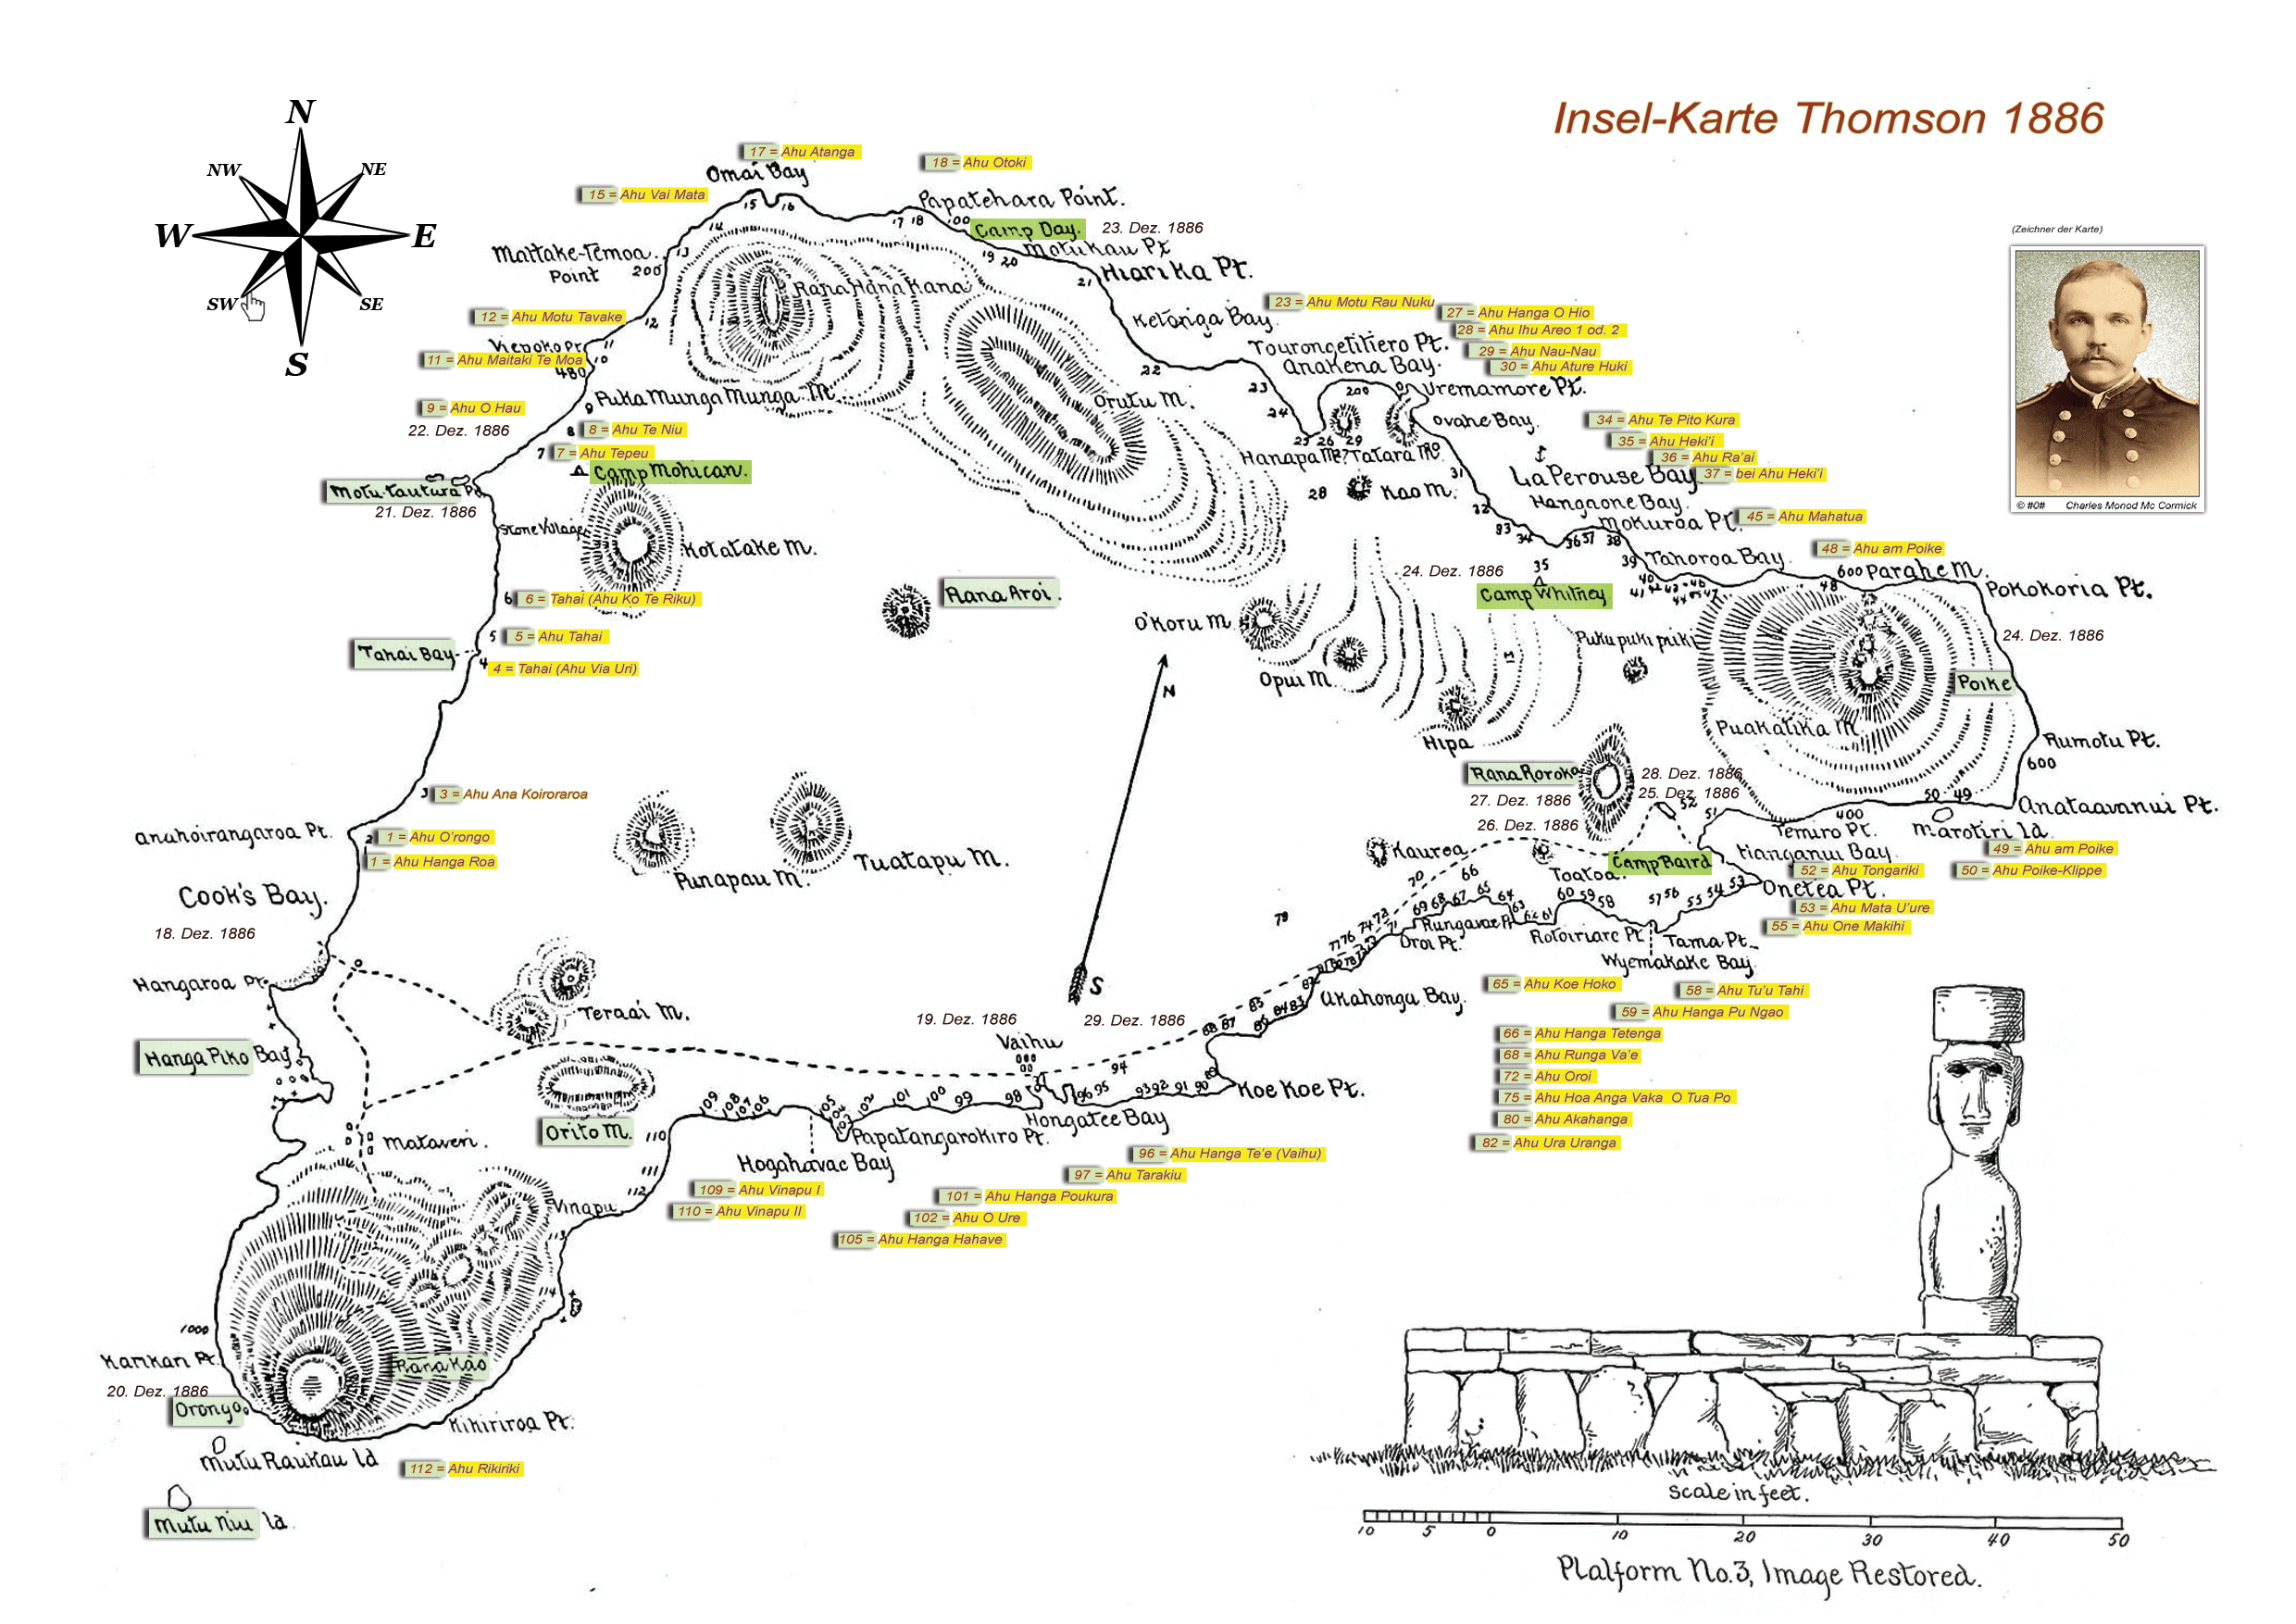 Karte von der Osterinsel aus dem Jahre 1886 von William J. Thomson